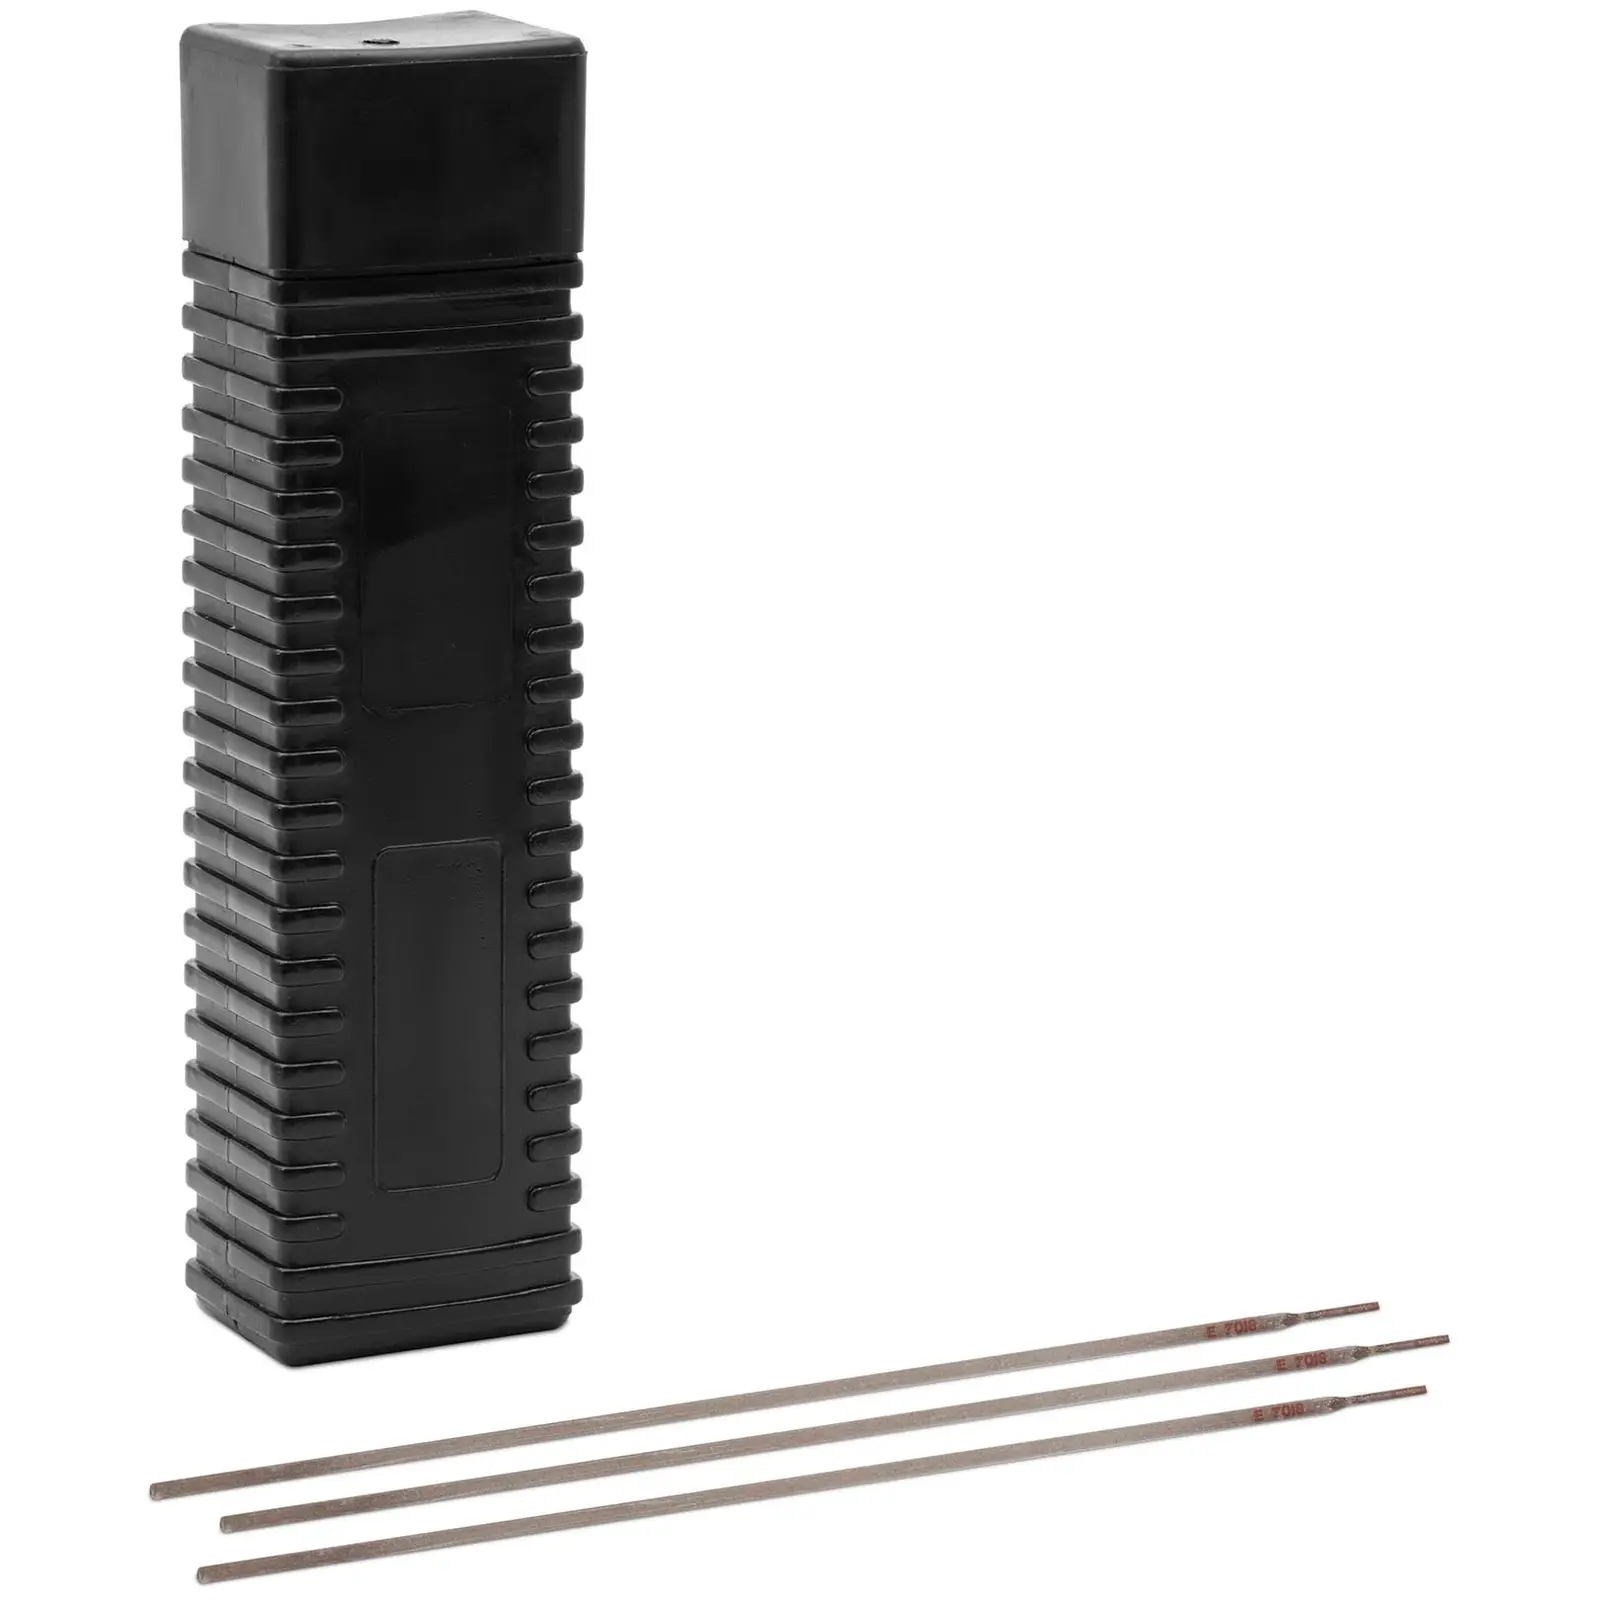 Varilne palice - za jekla - osnovne - Ø 2.5 x 350 mm - 5 kg